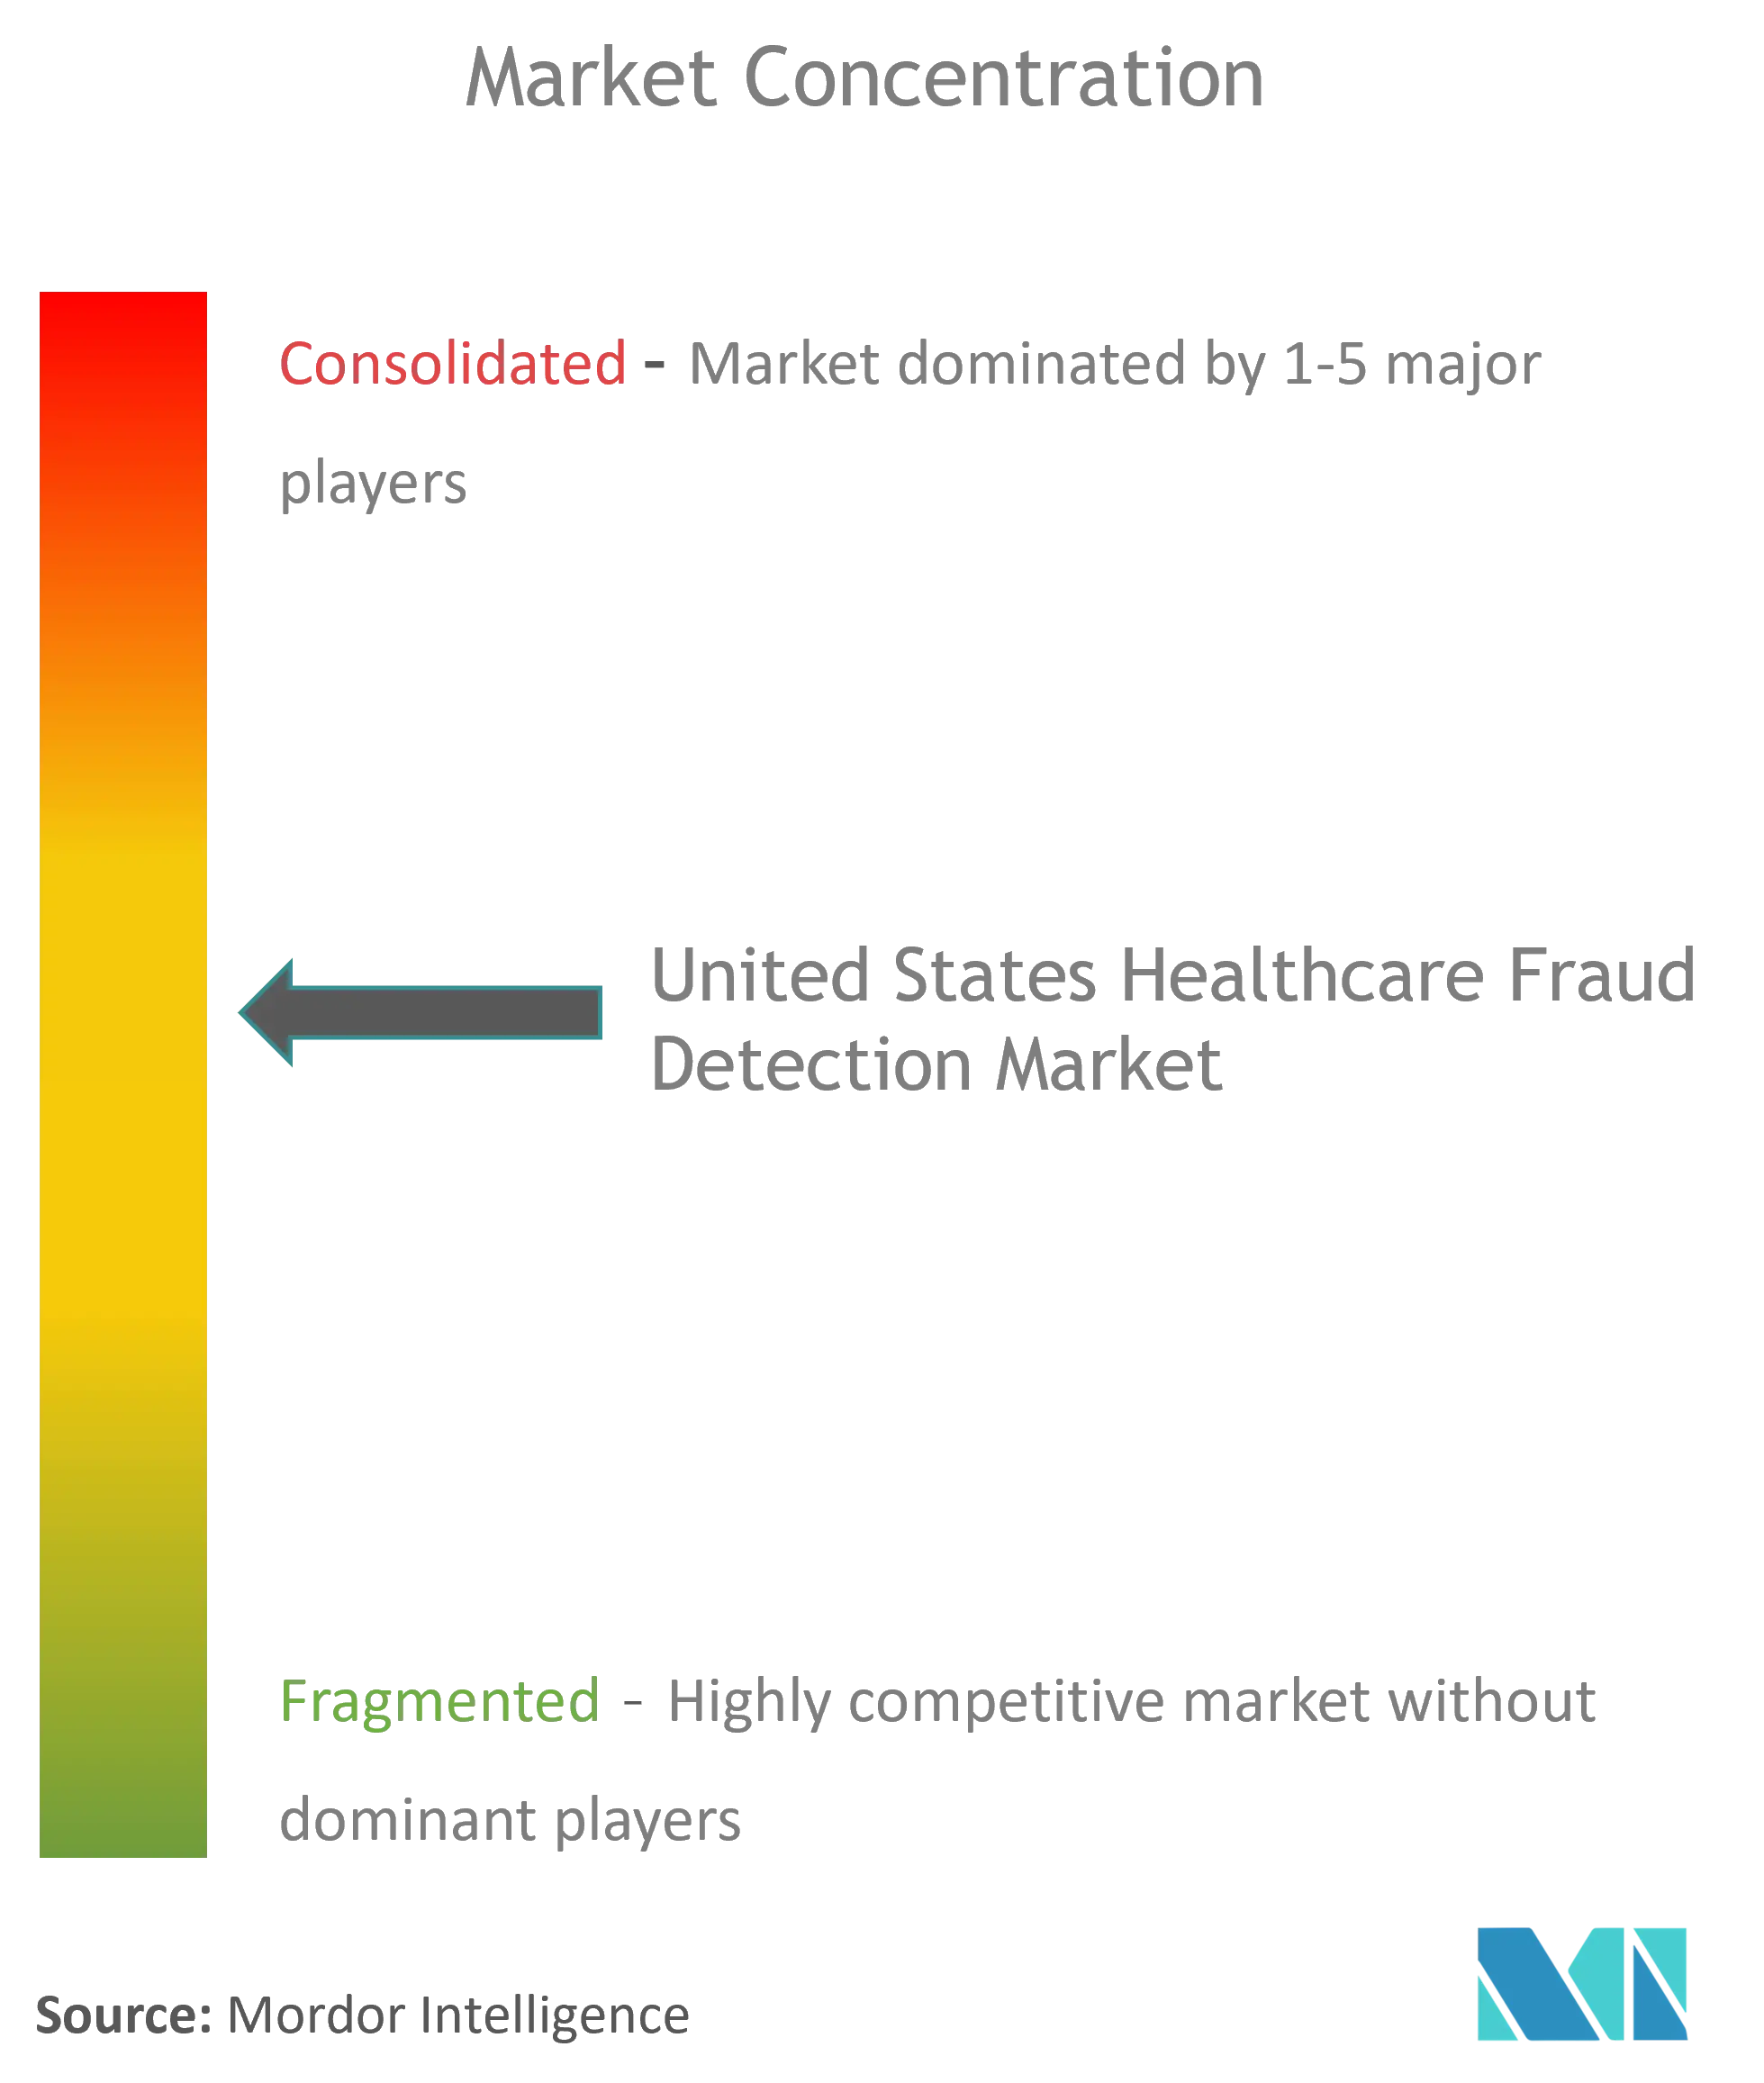 تركيز سوق الكشف عن الاحتيال في مجال الرعاية الصحية في الولايات المتحدة